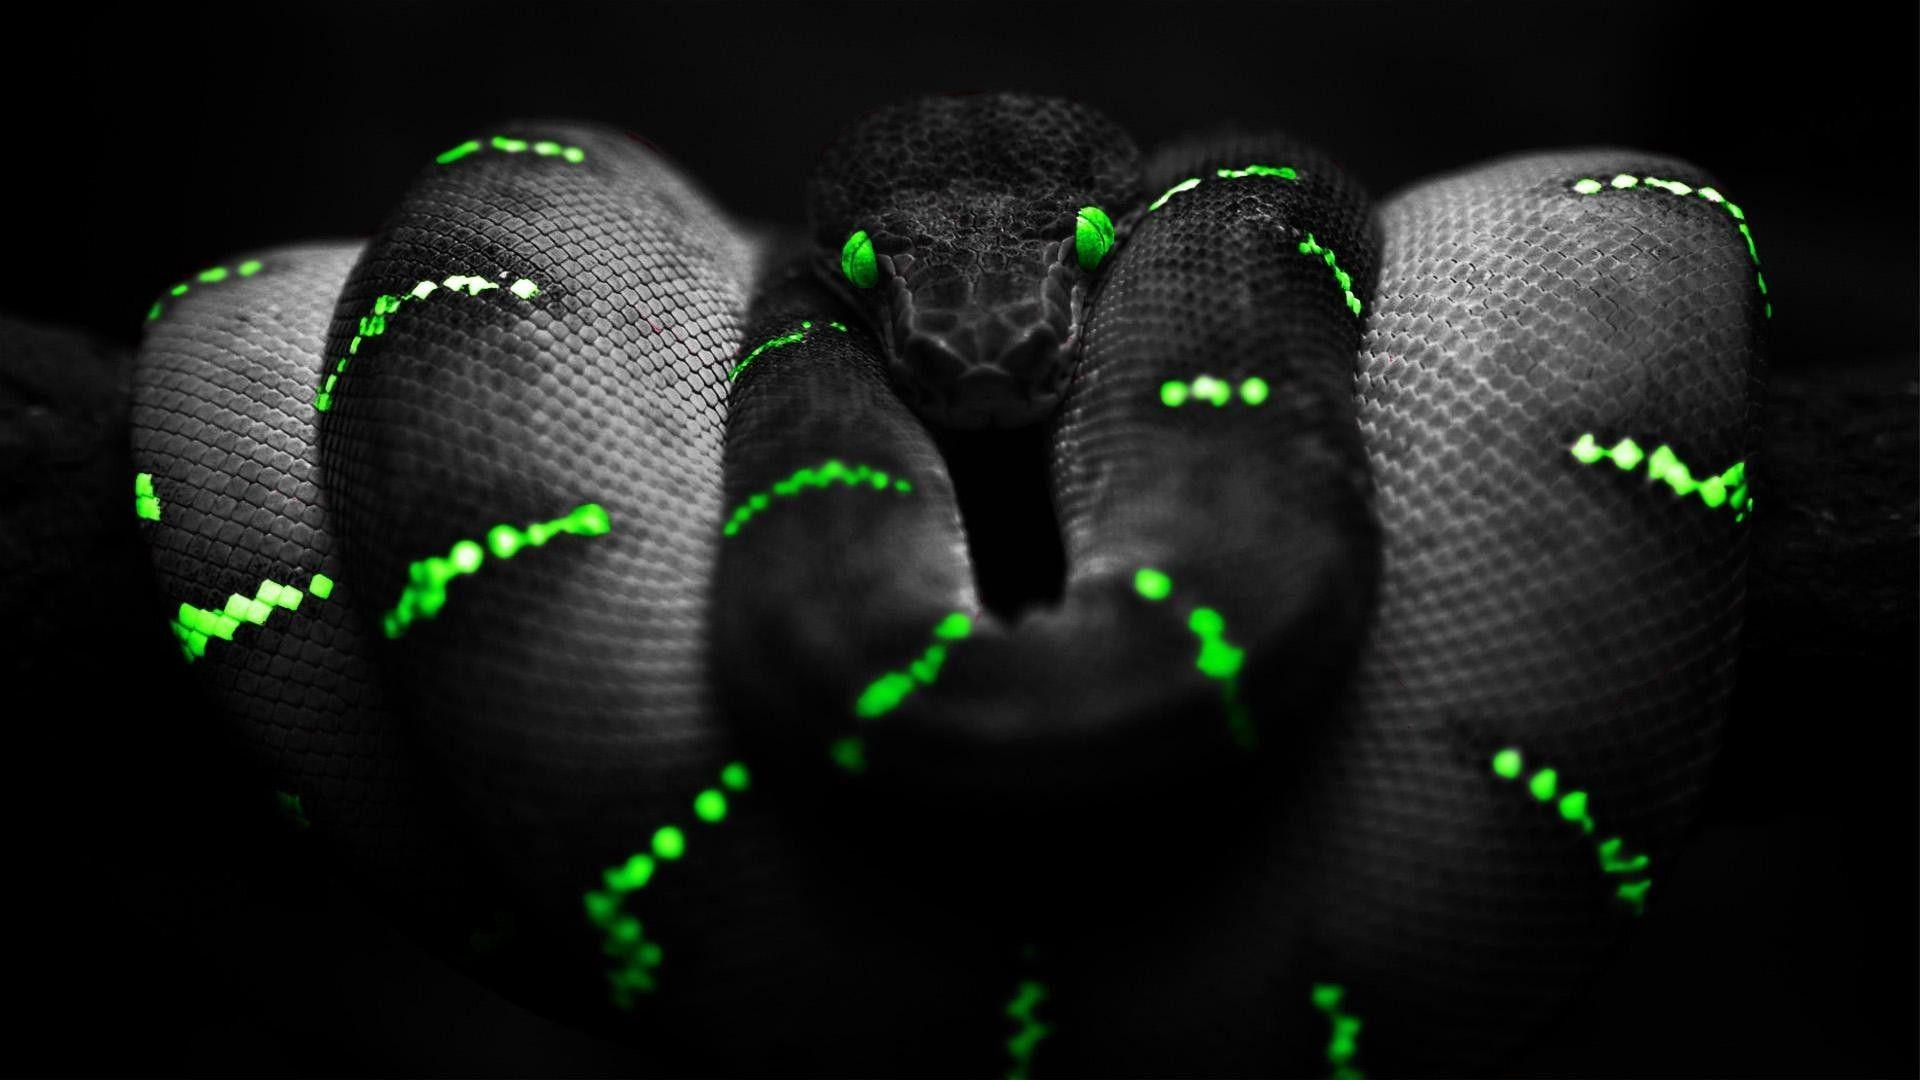 Snake of the dark wallpaper. PC